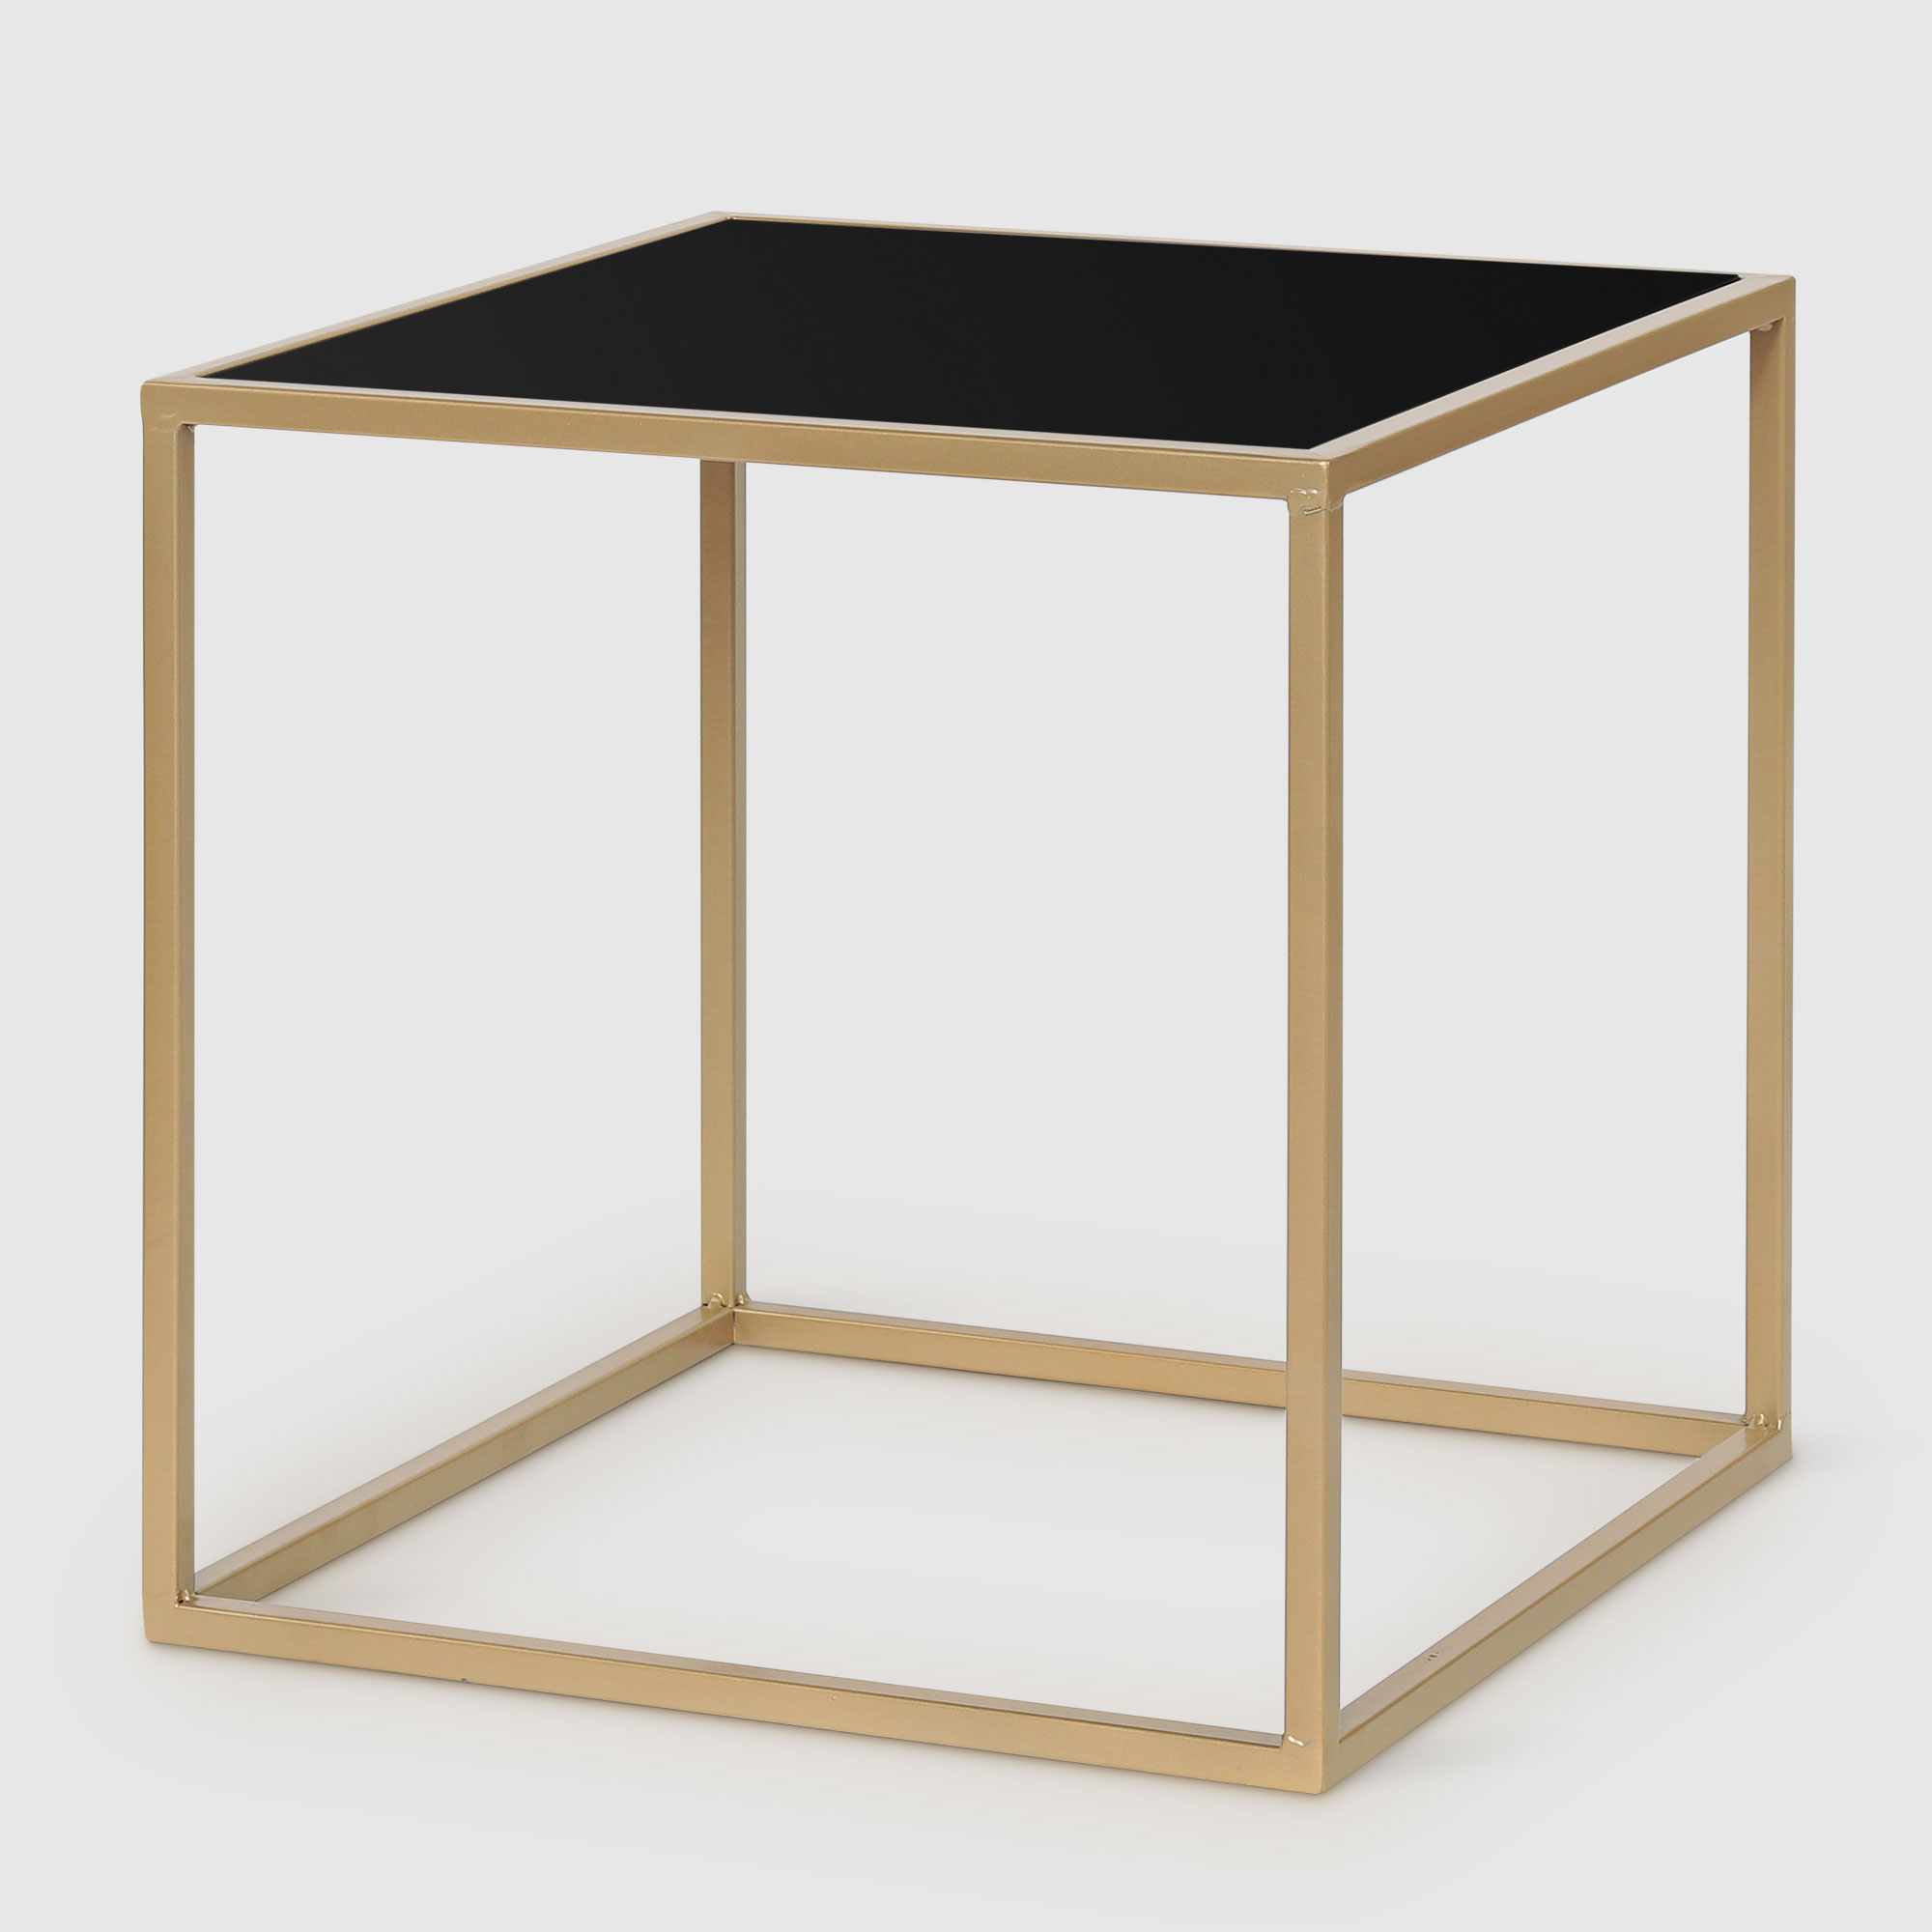 Набор журнальных столиков AD Trend Furniture золотой с чёрным 40/50 см - фото 2